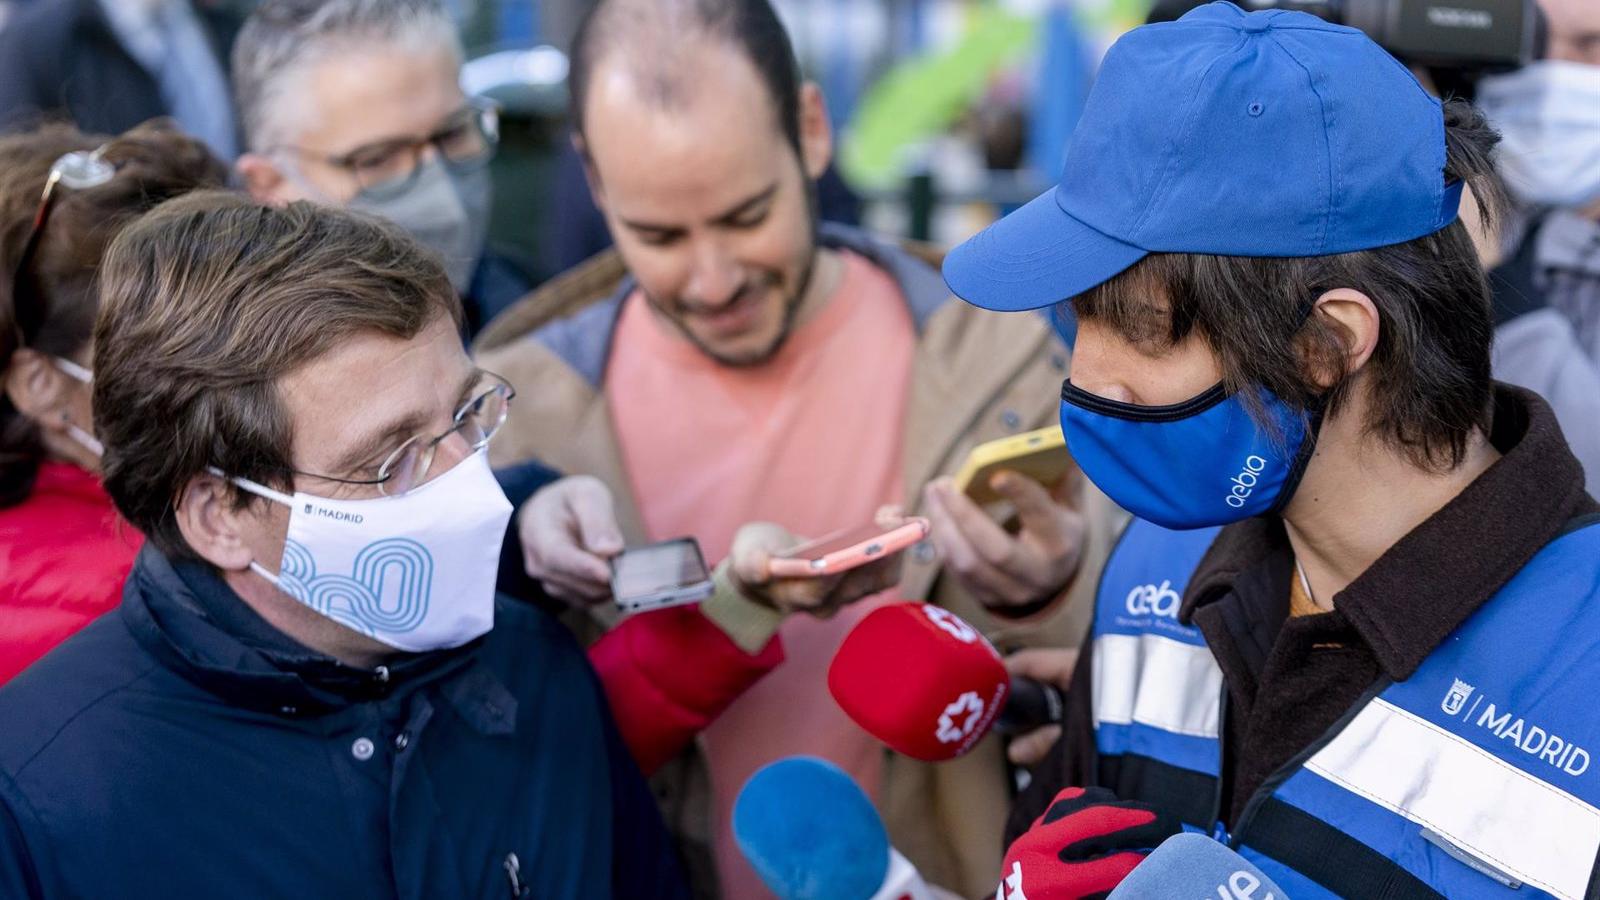 Más de 1.975 personas cambiaron multas de 750€ por miccionar o ensuciar con el botellón por trabajos comunitarios de limpieza en Madrid